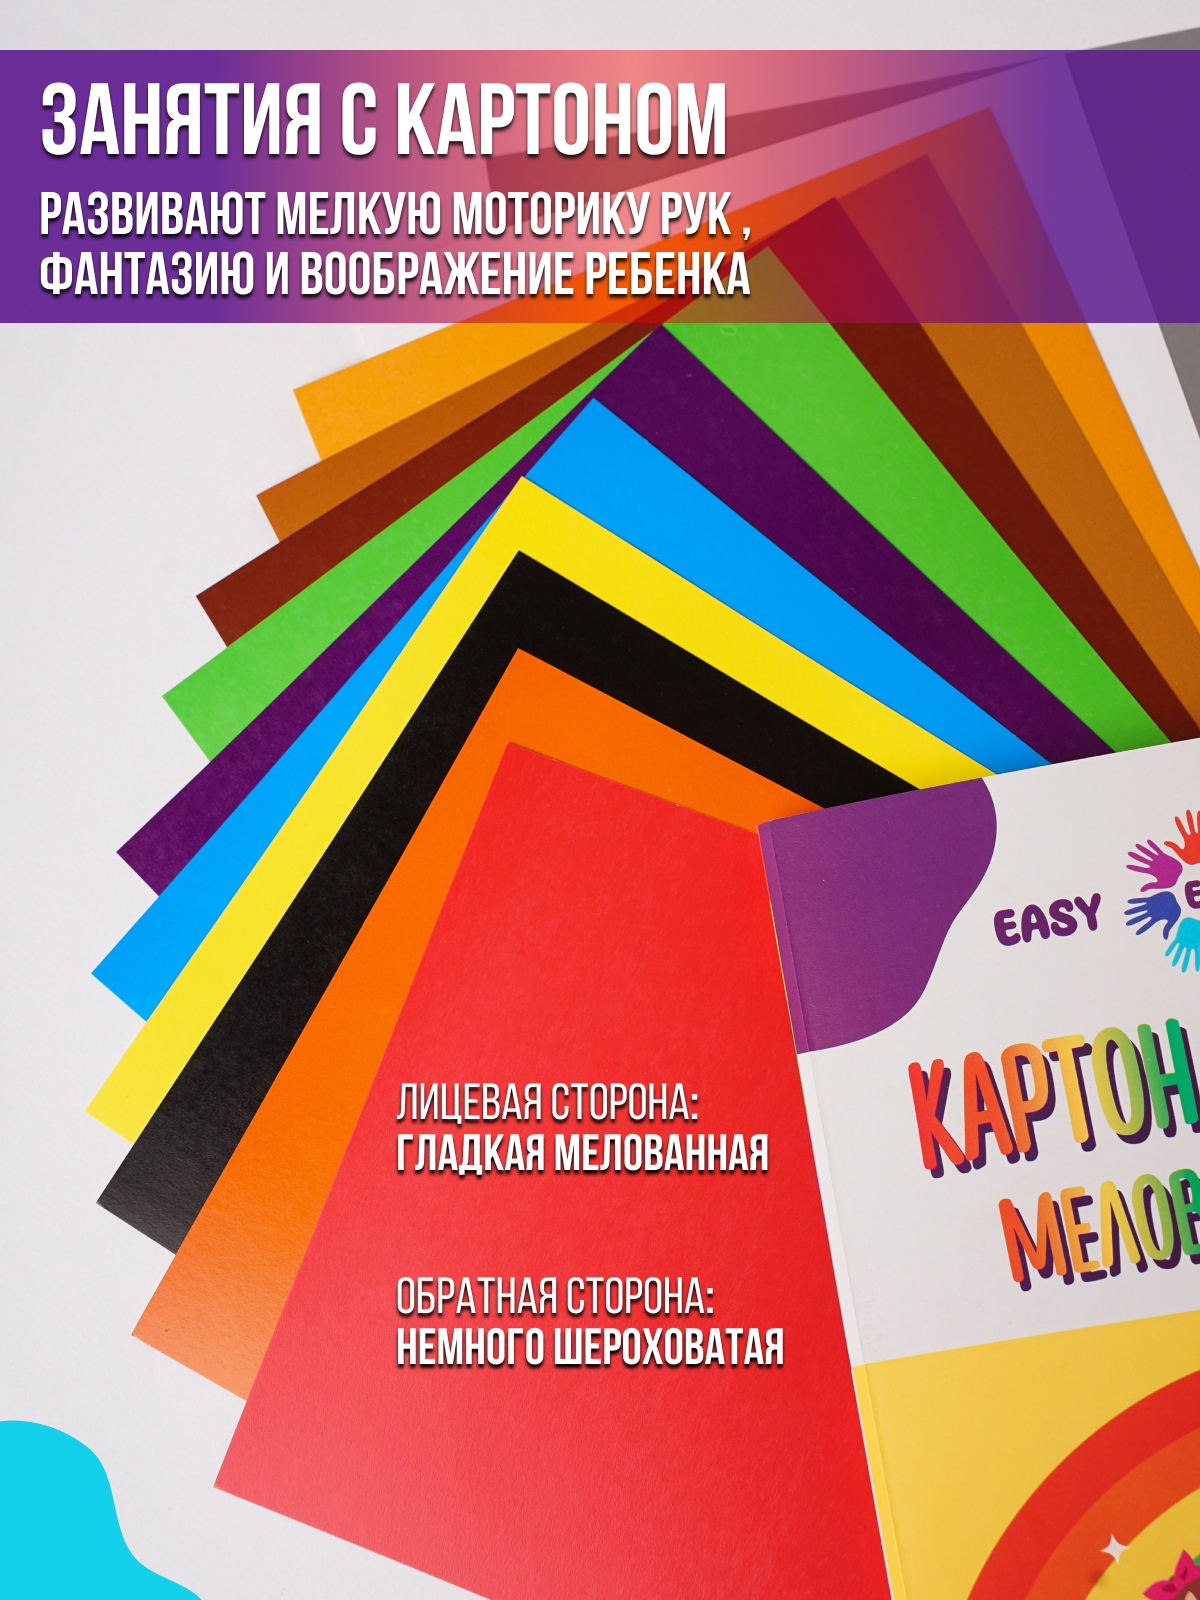 Картон EasyFast цветной мелованный двухсторонний 12 листов - фото 3